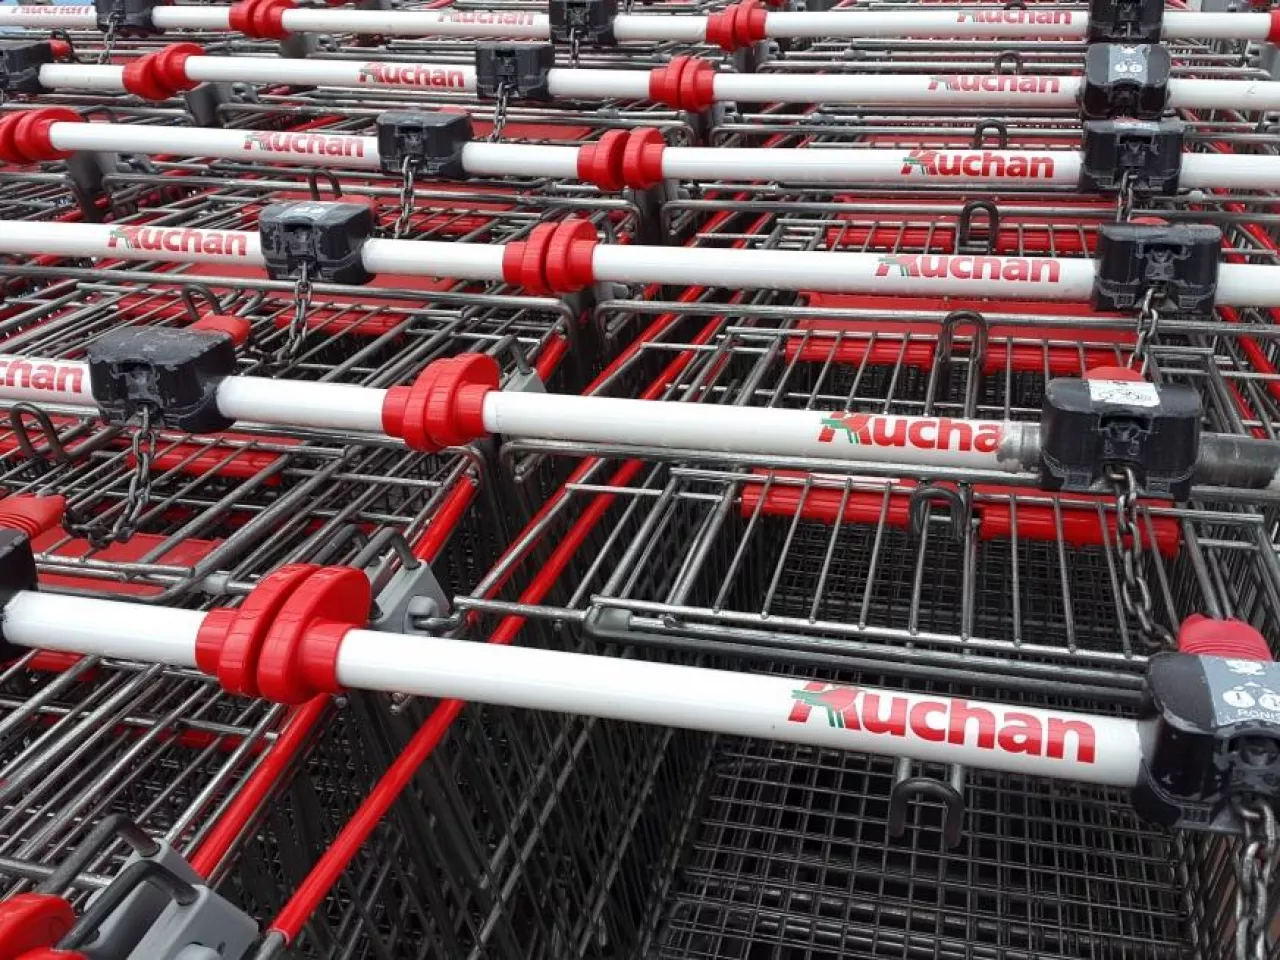 Auchan postrzega dyskonty jako swoich głównych rywali na rynku handlowym w Polsce (fot. wiadomoscihandlowe.pl)